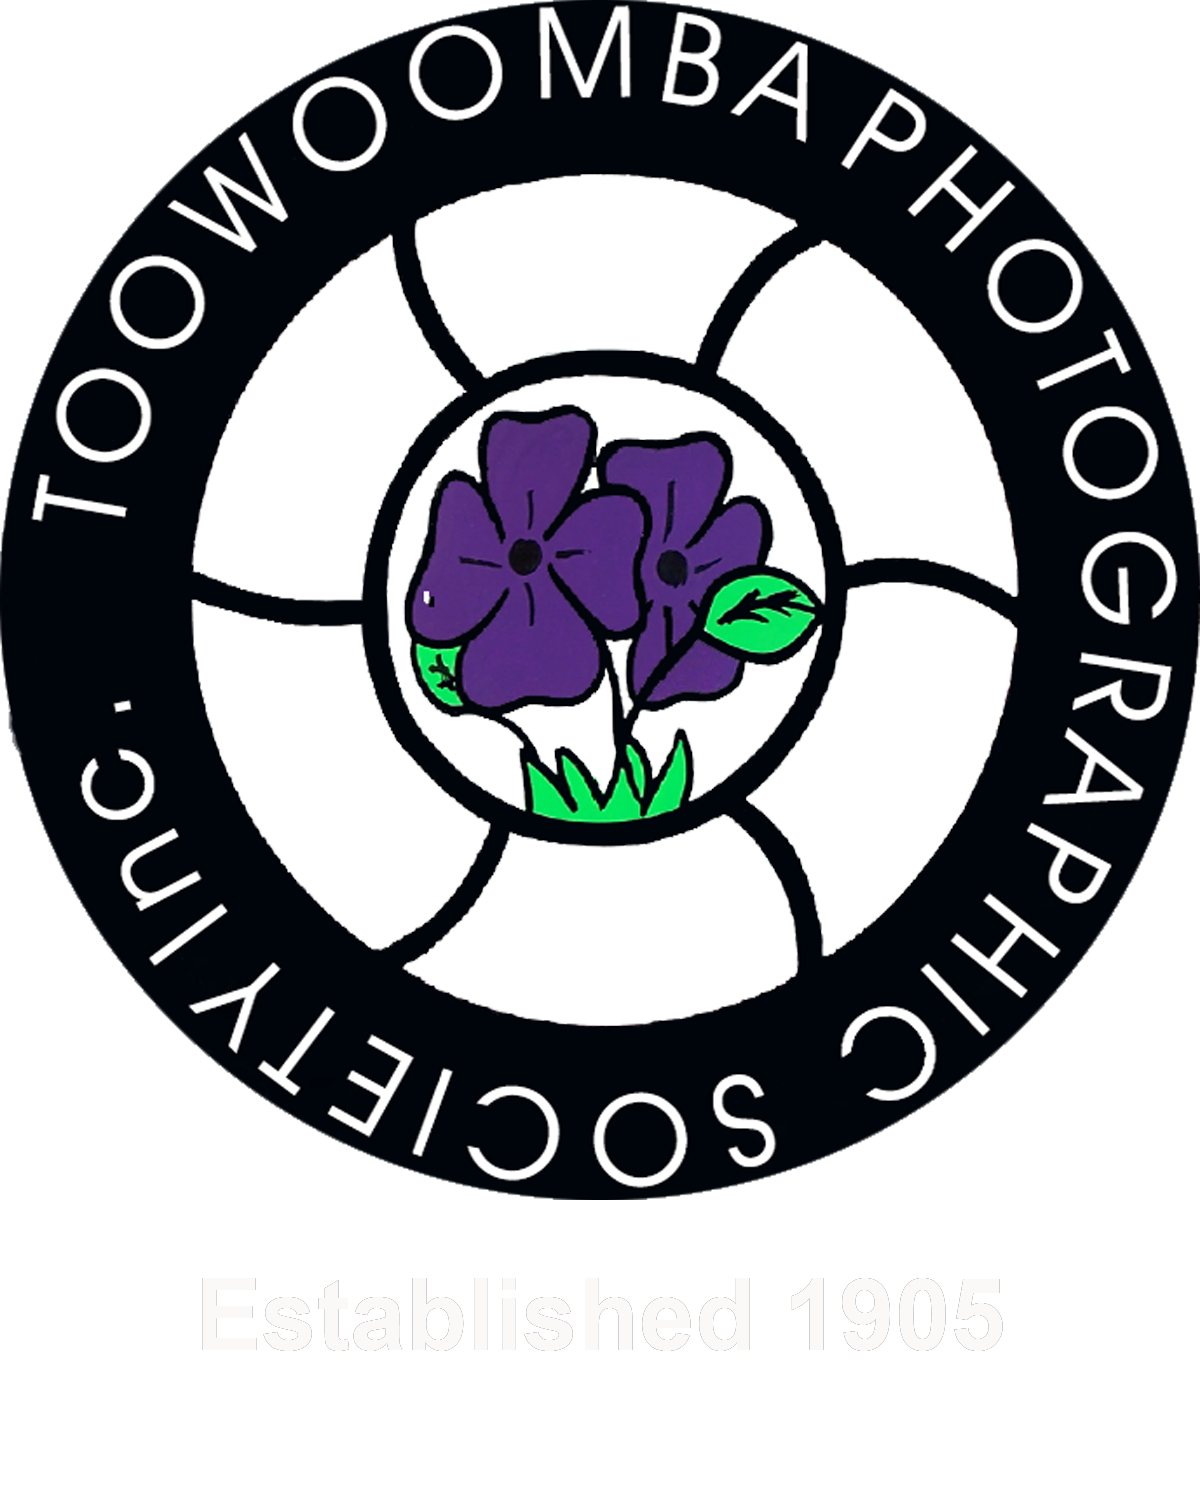 Toowoomba Photographic Society